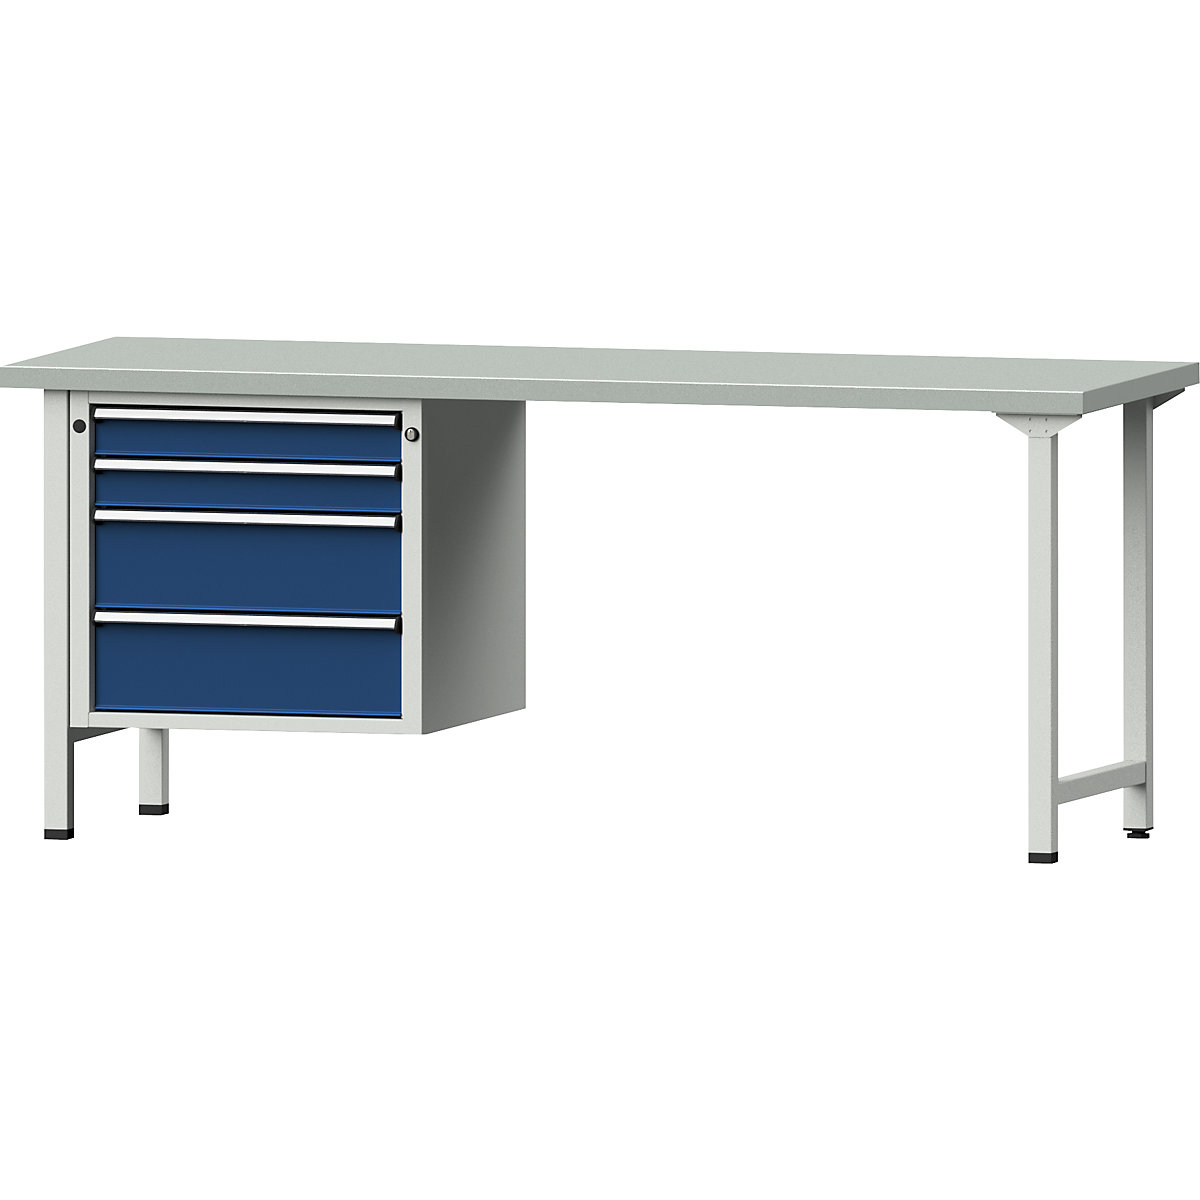 Dílenský stůl s rámovou konstrukcí – ANKE, 2 zásuvky 90 mm, 2 zásuvky 180 mm, deska s potahem z ocelového plechu, šířka 2000 mm-8